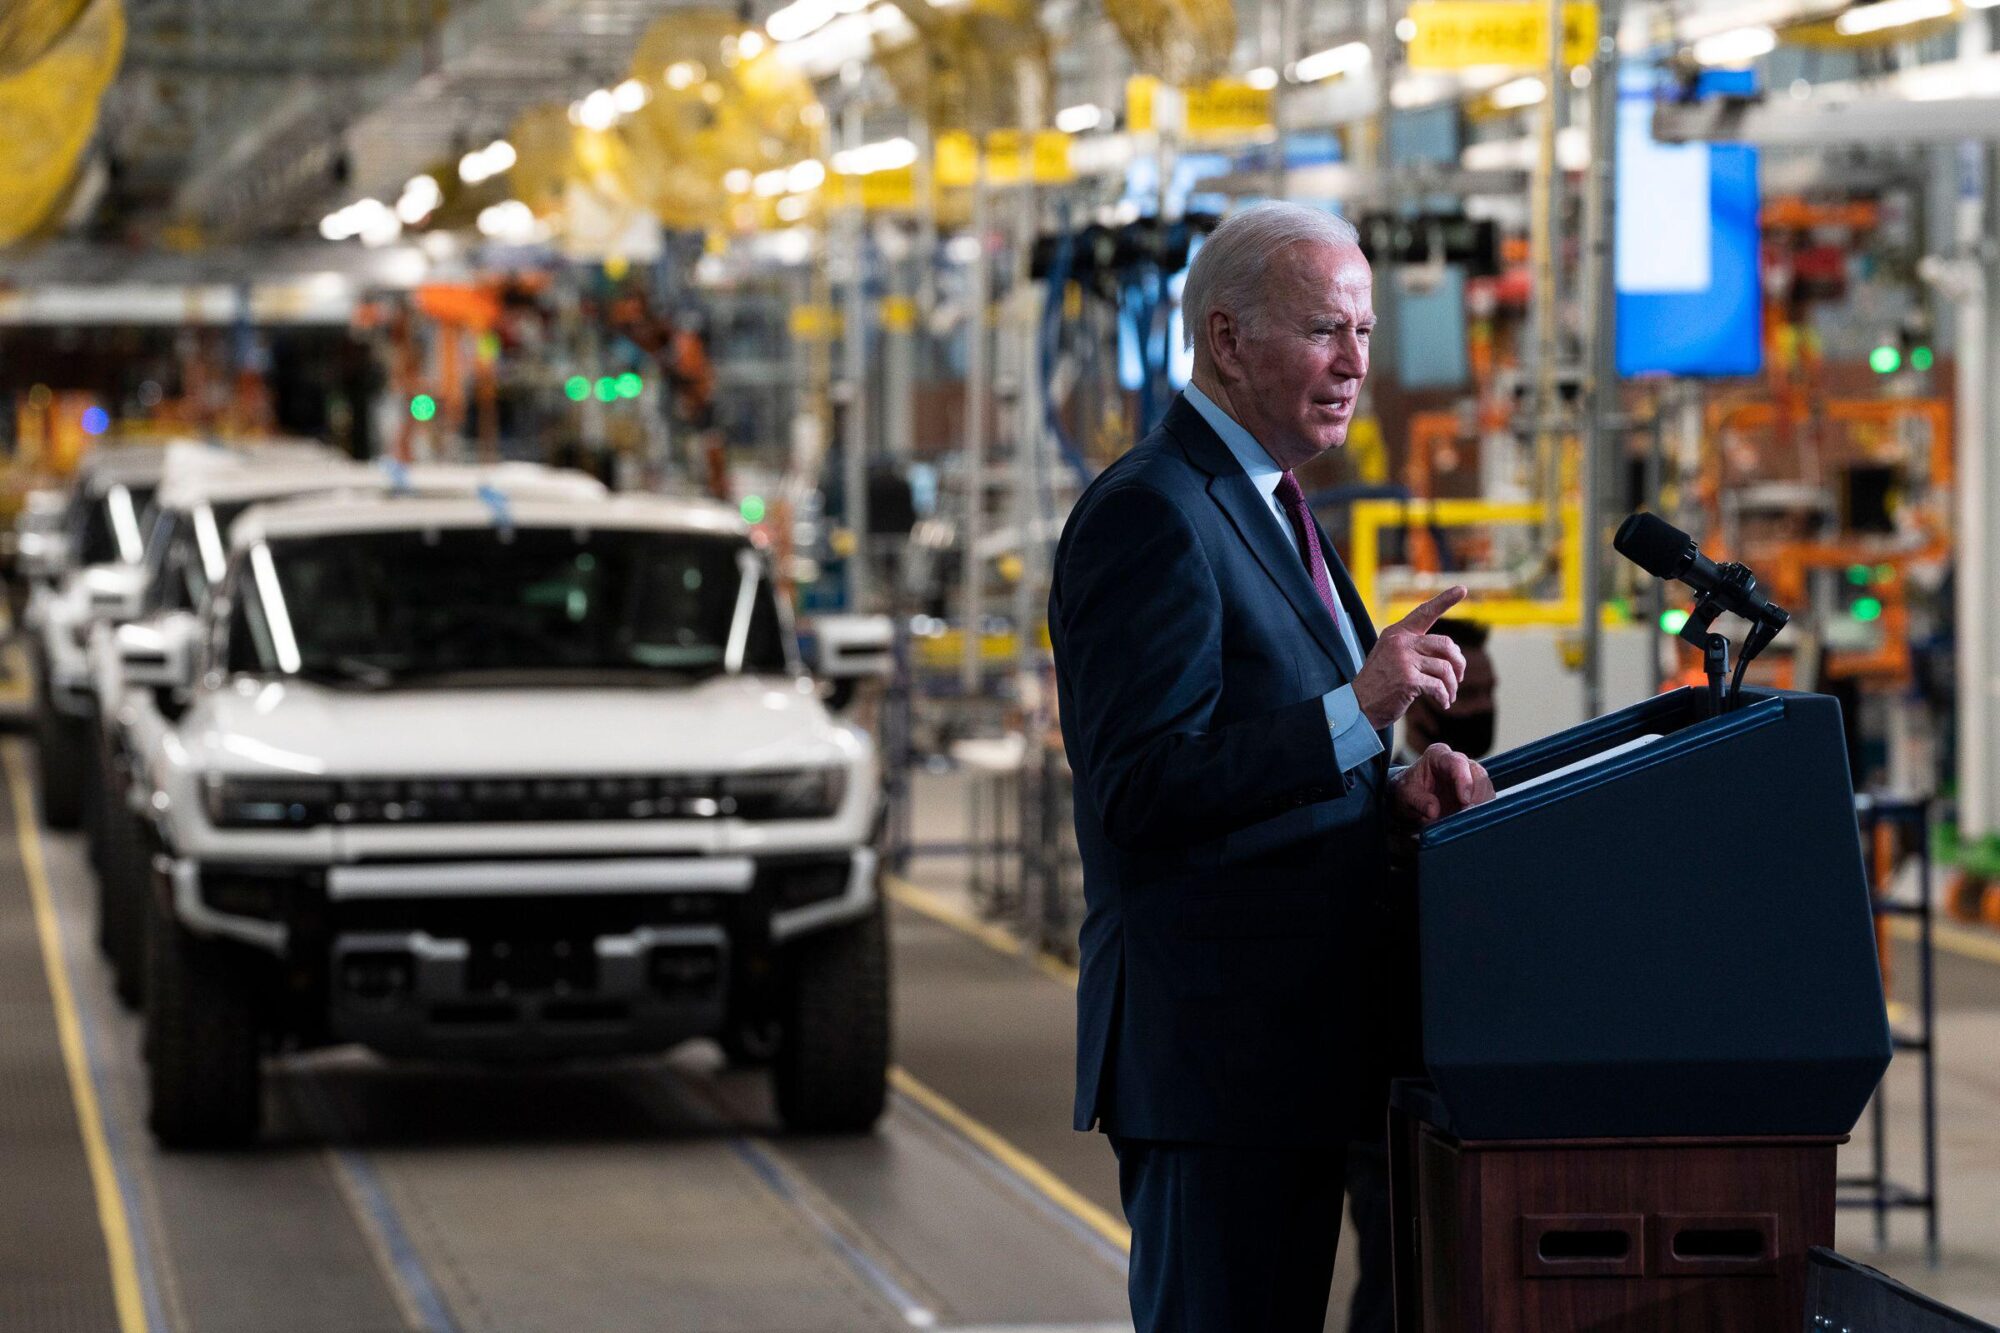 <p>O presidente Joe Biden visita uma fábrica de veículos elétricos em Detroit, em novembro de 2021. A Lei de Redução da Inflação de seu governo, aprovada em agosto de 2022, busca estimular o crescimento de tecnologias de energia limpa nos EUA, o que significa maior demanda por minerais vitais (Imagem: ZUMA Press / Alamy)</p> <div id="gtx-trans" style="position: absolute; left: 698px; top: -13.7812px;"> <div class="gtx-trans-icon"></div> </div>